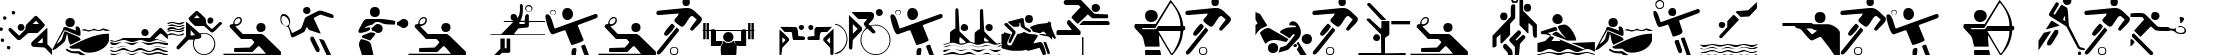 Пример написания шрифтом Olympicons Regular текста на французском